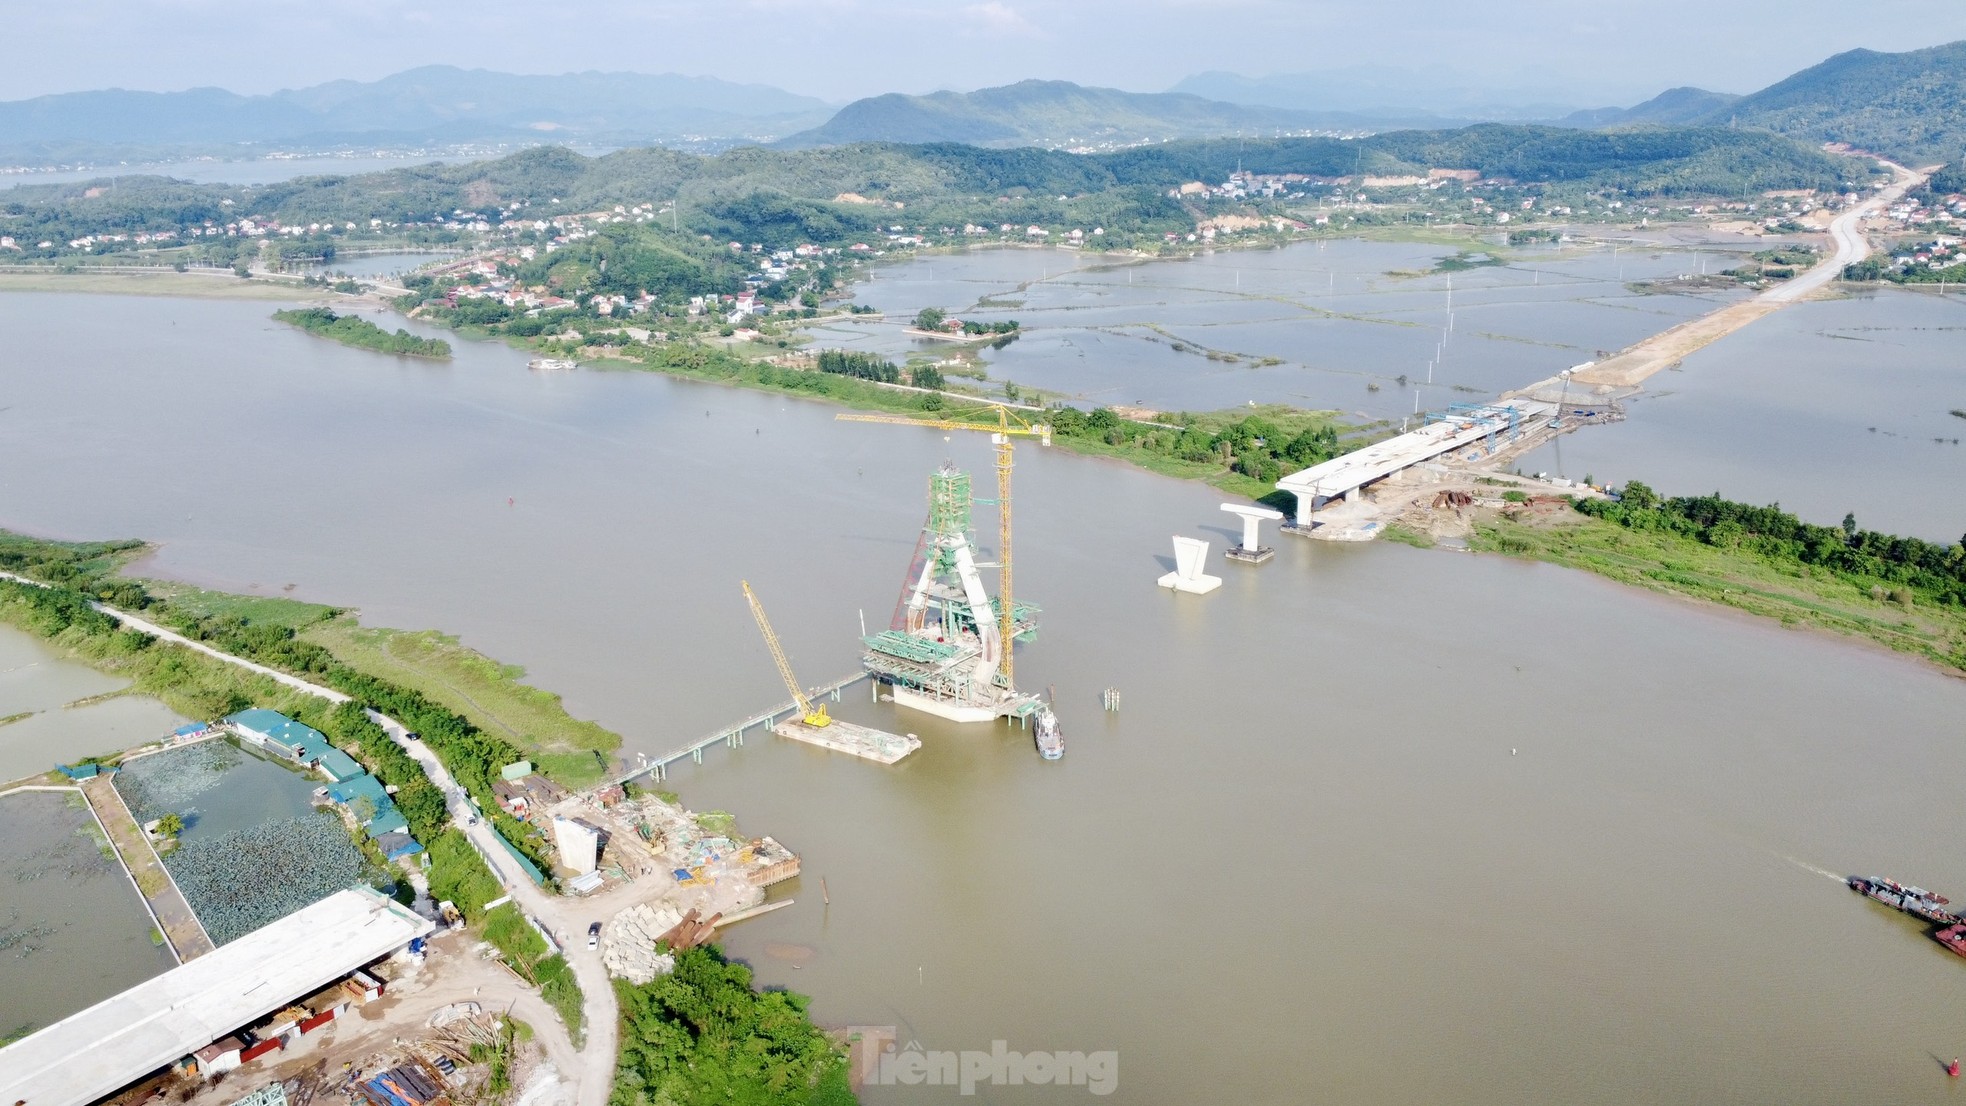 Cầu dây văng trị giá gần 1.500 tỷ đồng nối Bắc Giang - Hải Dương sắp thành hình - Ảnh 13.